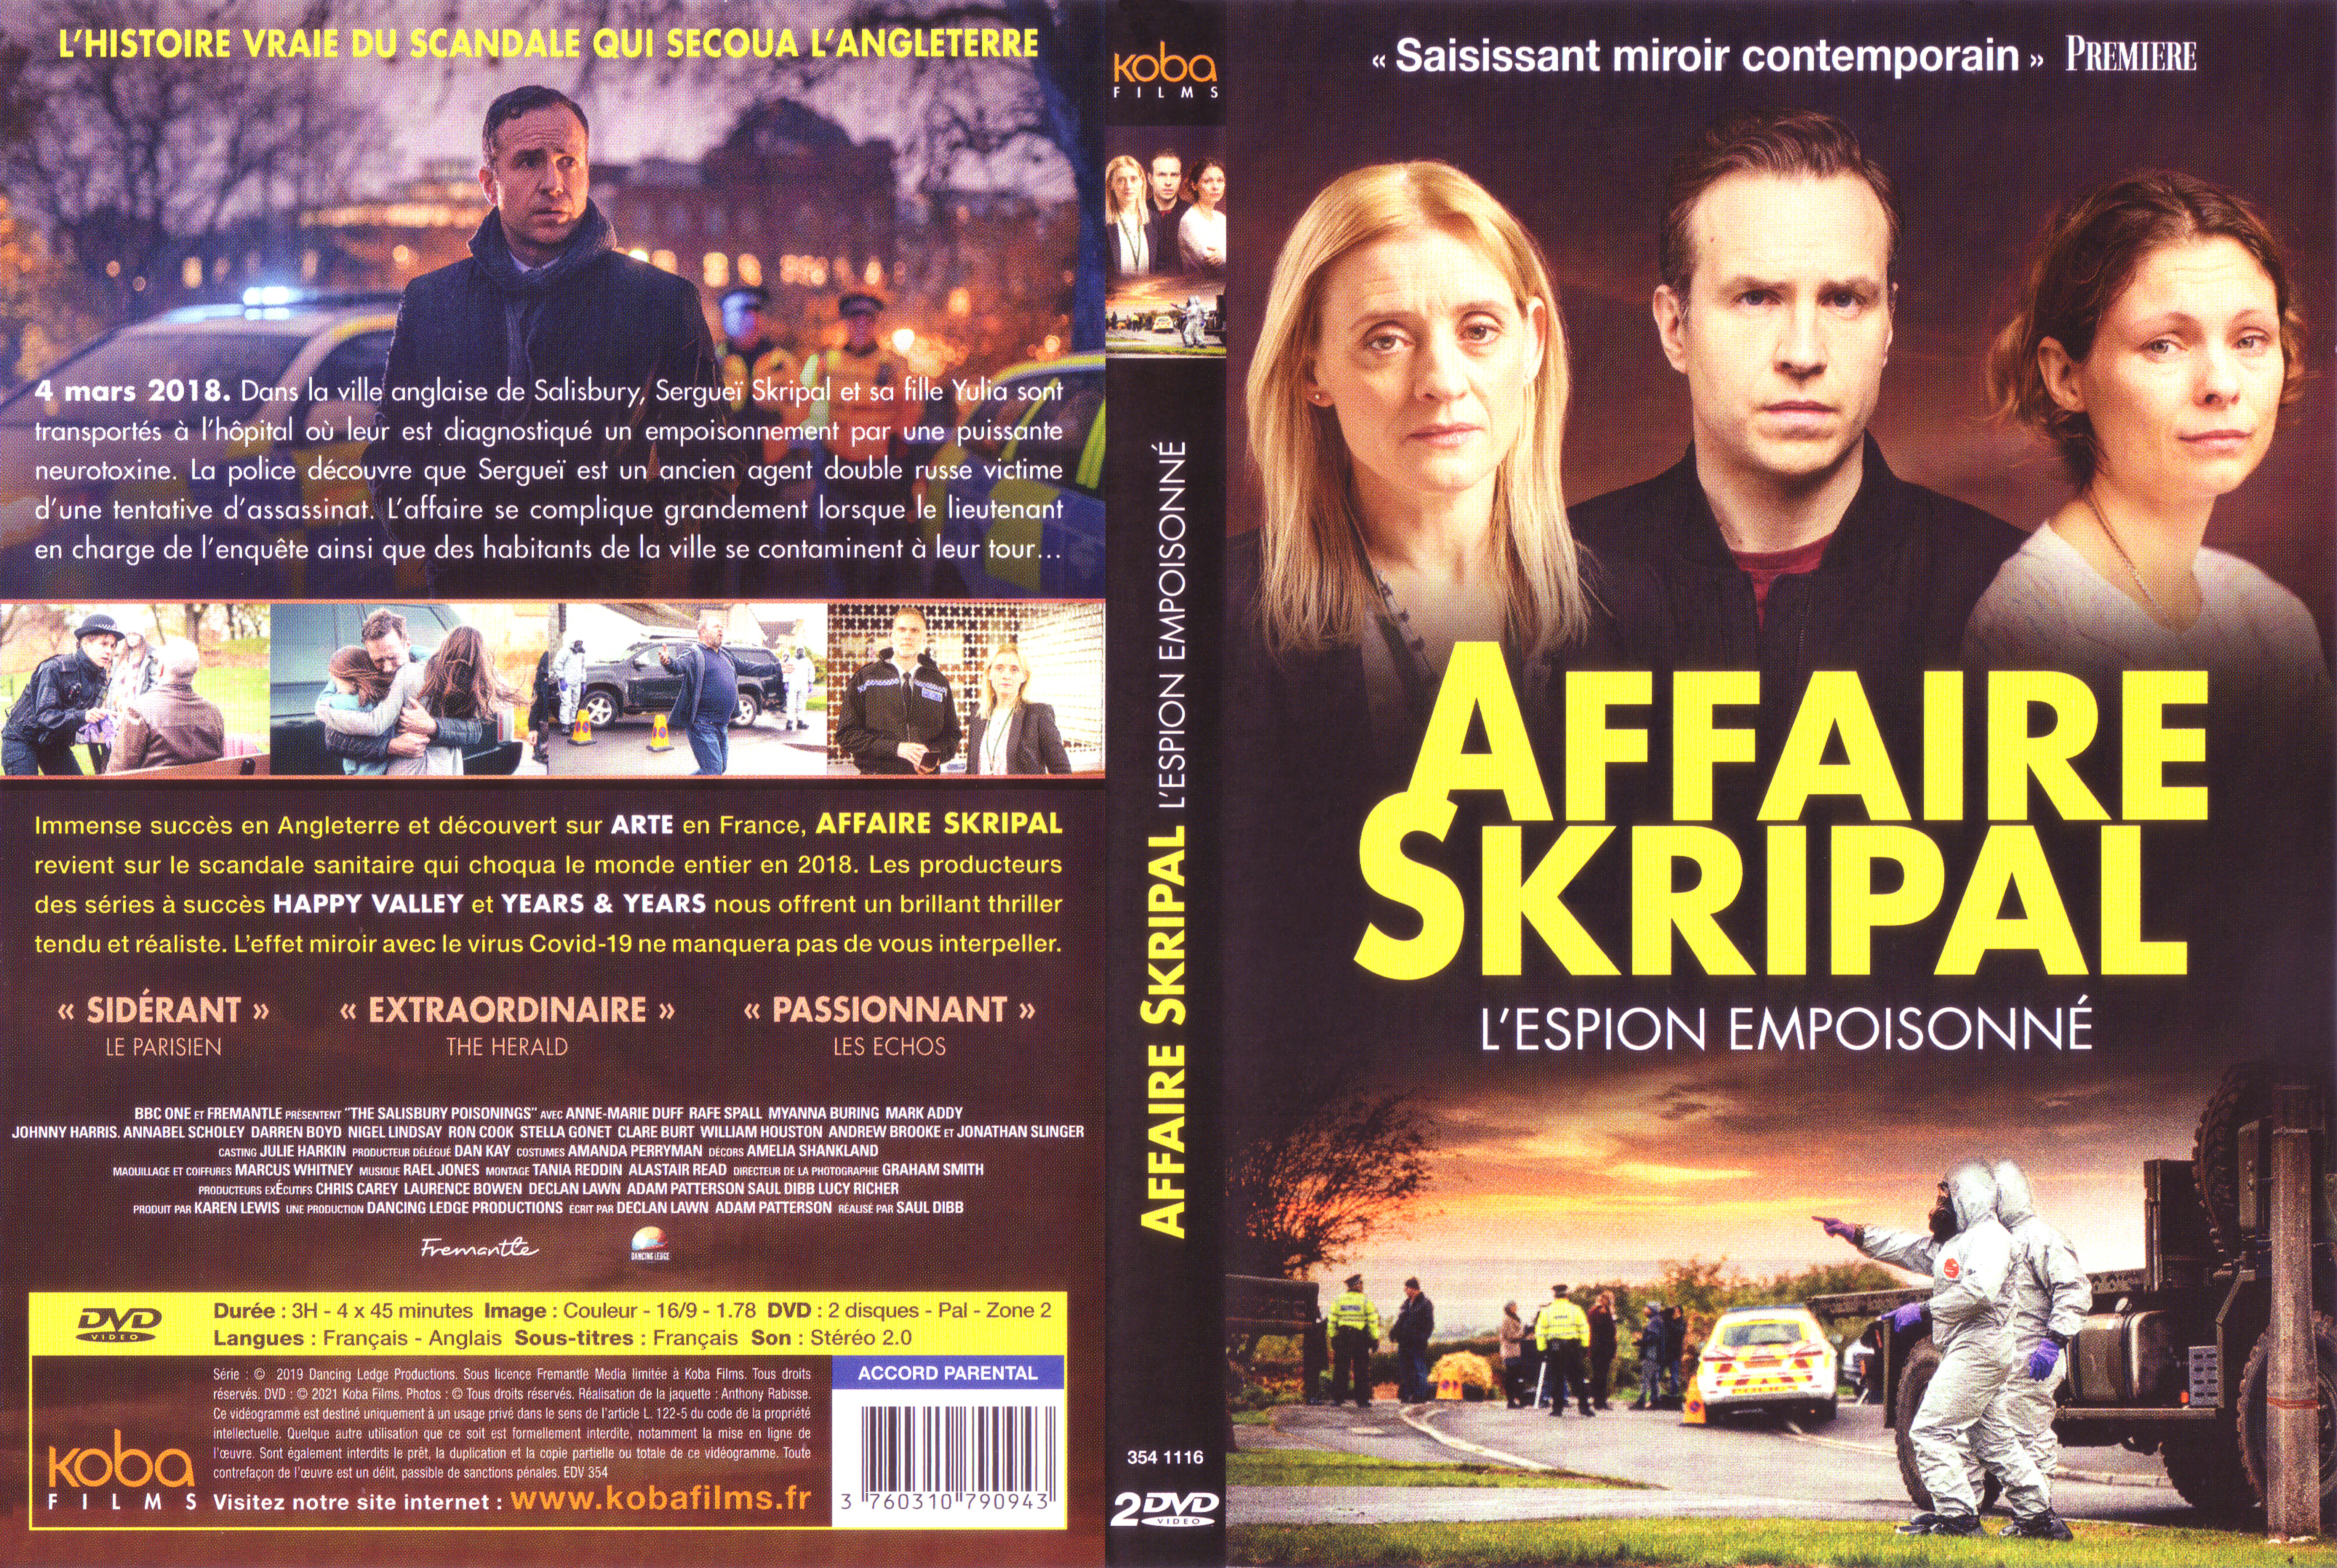 Jaquette DVD Affaire Skripal L